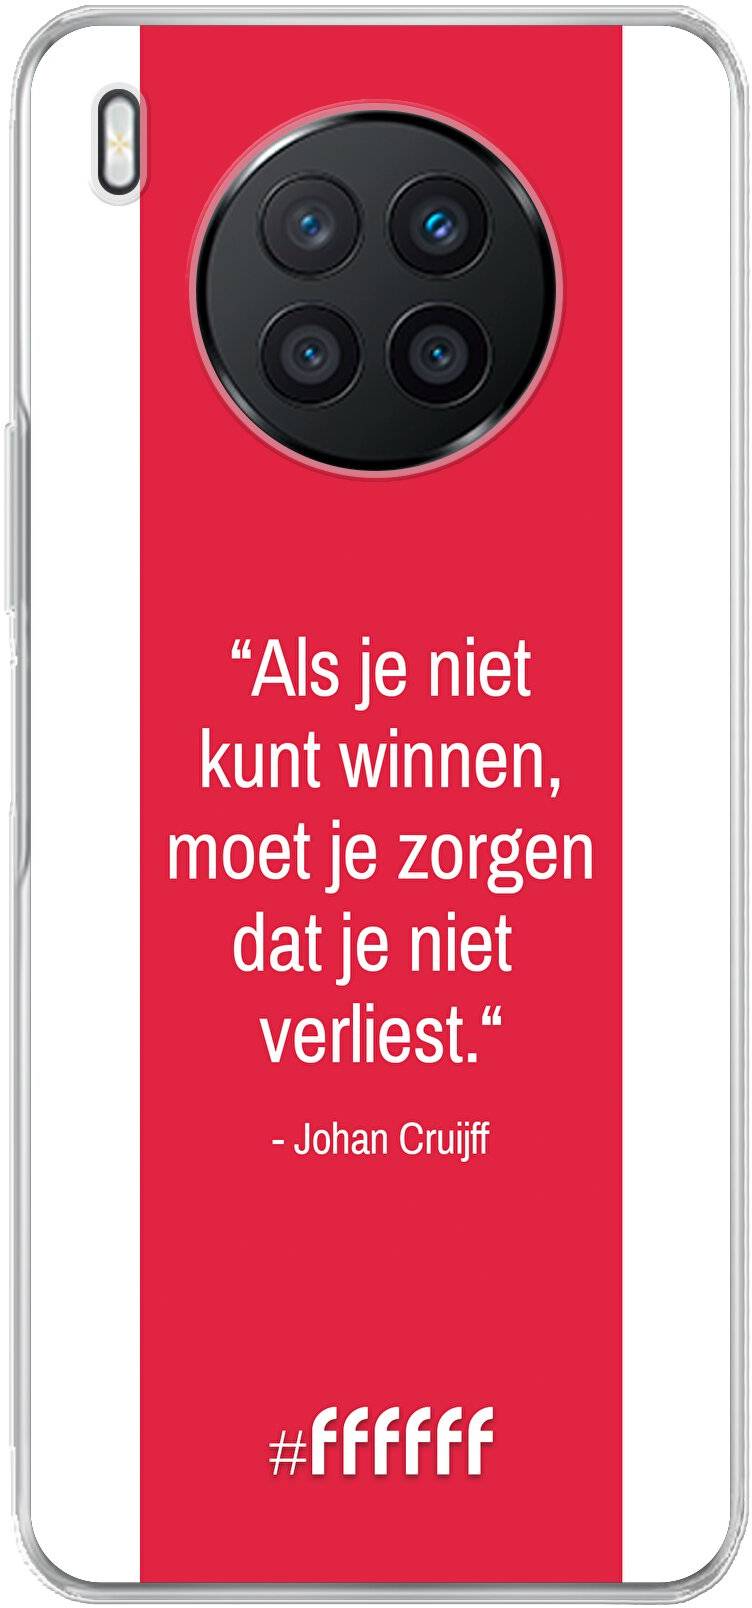 AFC Ajax Quote Johan Cruijff Nova 8i